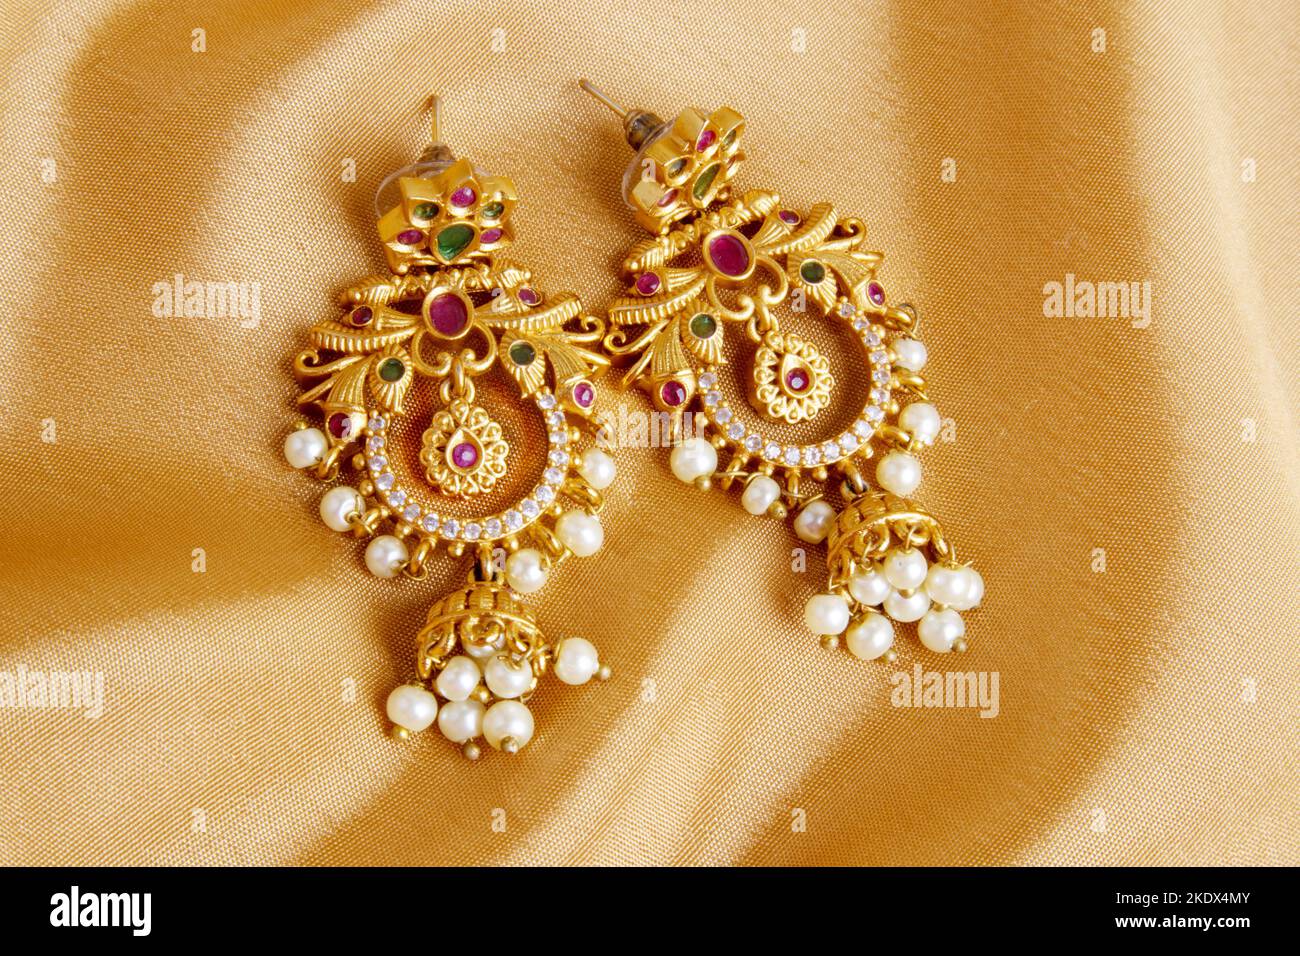 Ohrringe auf glatter, eleganter goldener Seide oder satinierter, luxuriöser Stoffstruktur als Hochzeitshintergrund. Luxuriöses Hintergrunddesign Stockfoto